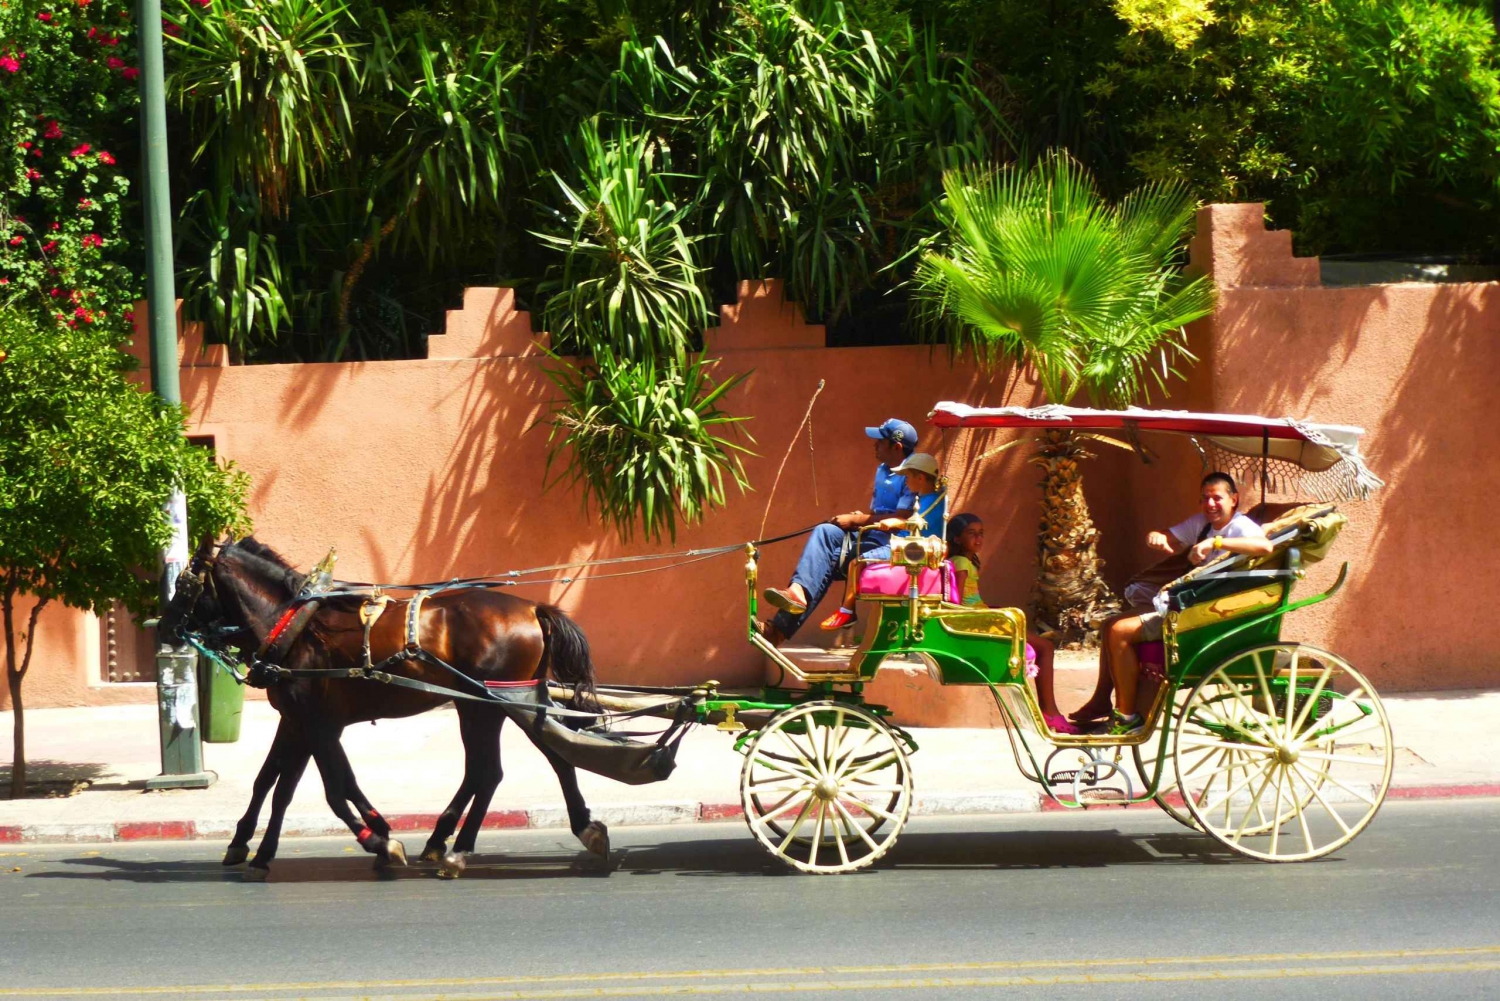 Marrakech: Majorelle & Menara Gardens Tour & Carriage Ride